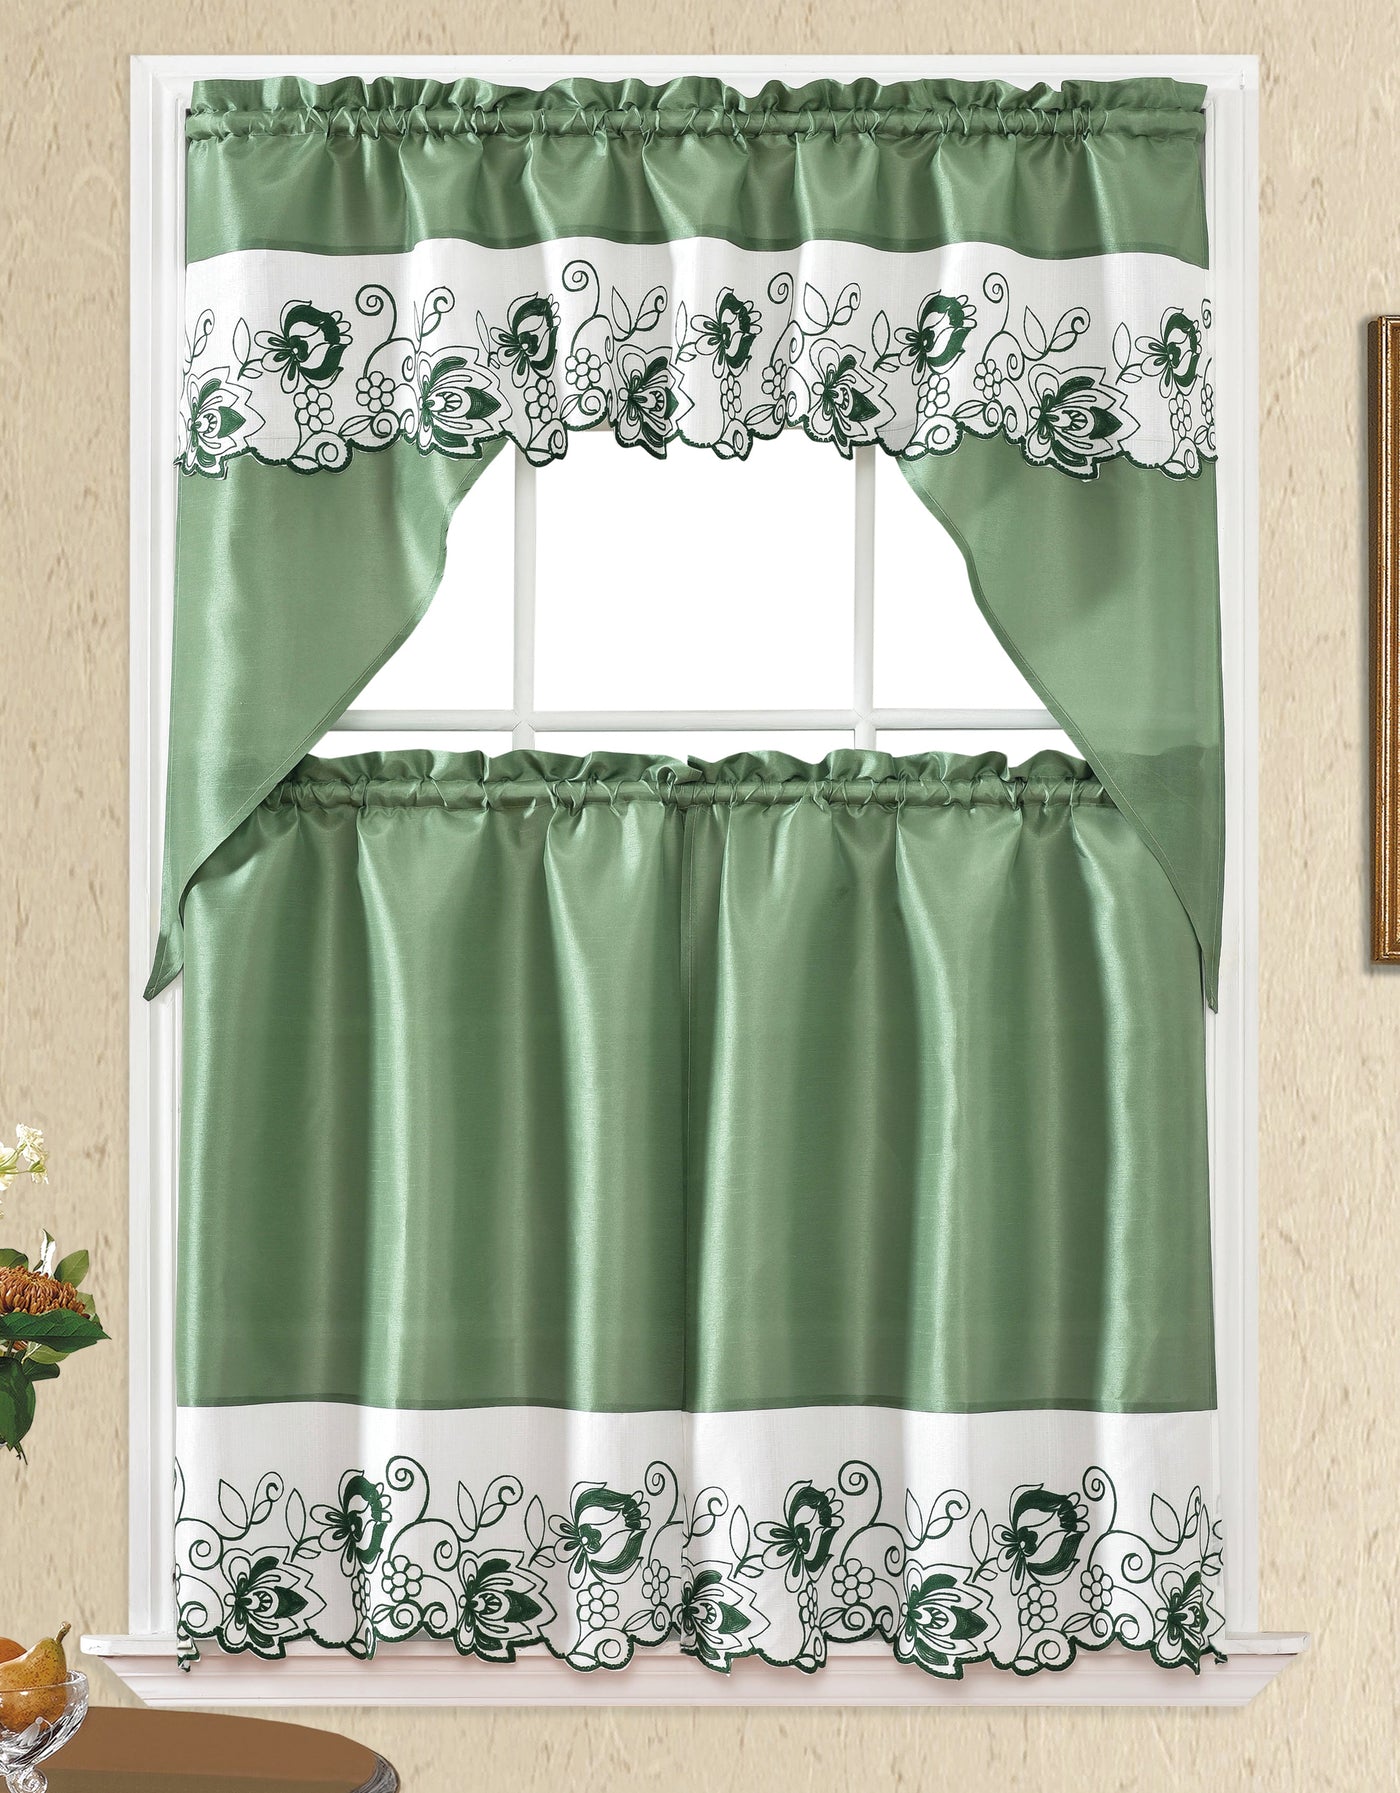 apple kitchen valance; cortina de cocina; cortinas para cocicna elegantes modernas; cortinas para cocinca; kitchen curtain; kitchen curtains and valance set